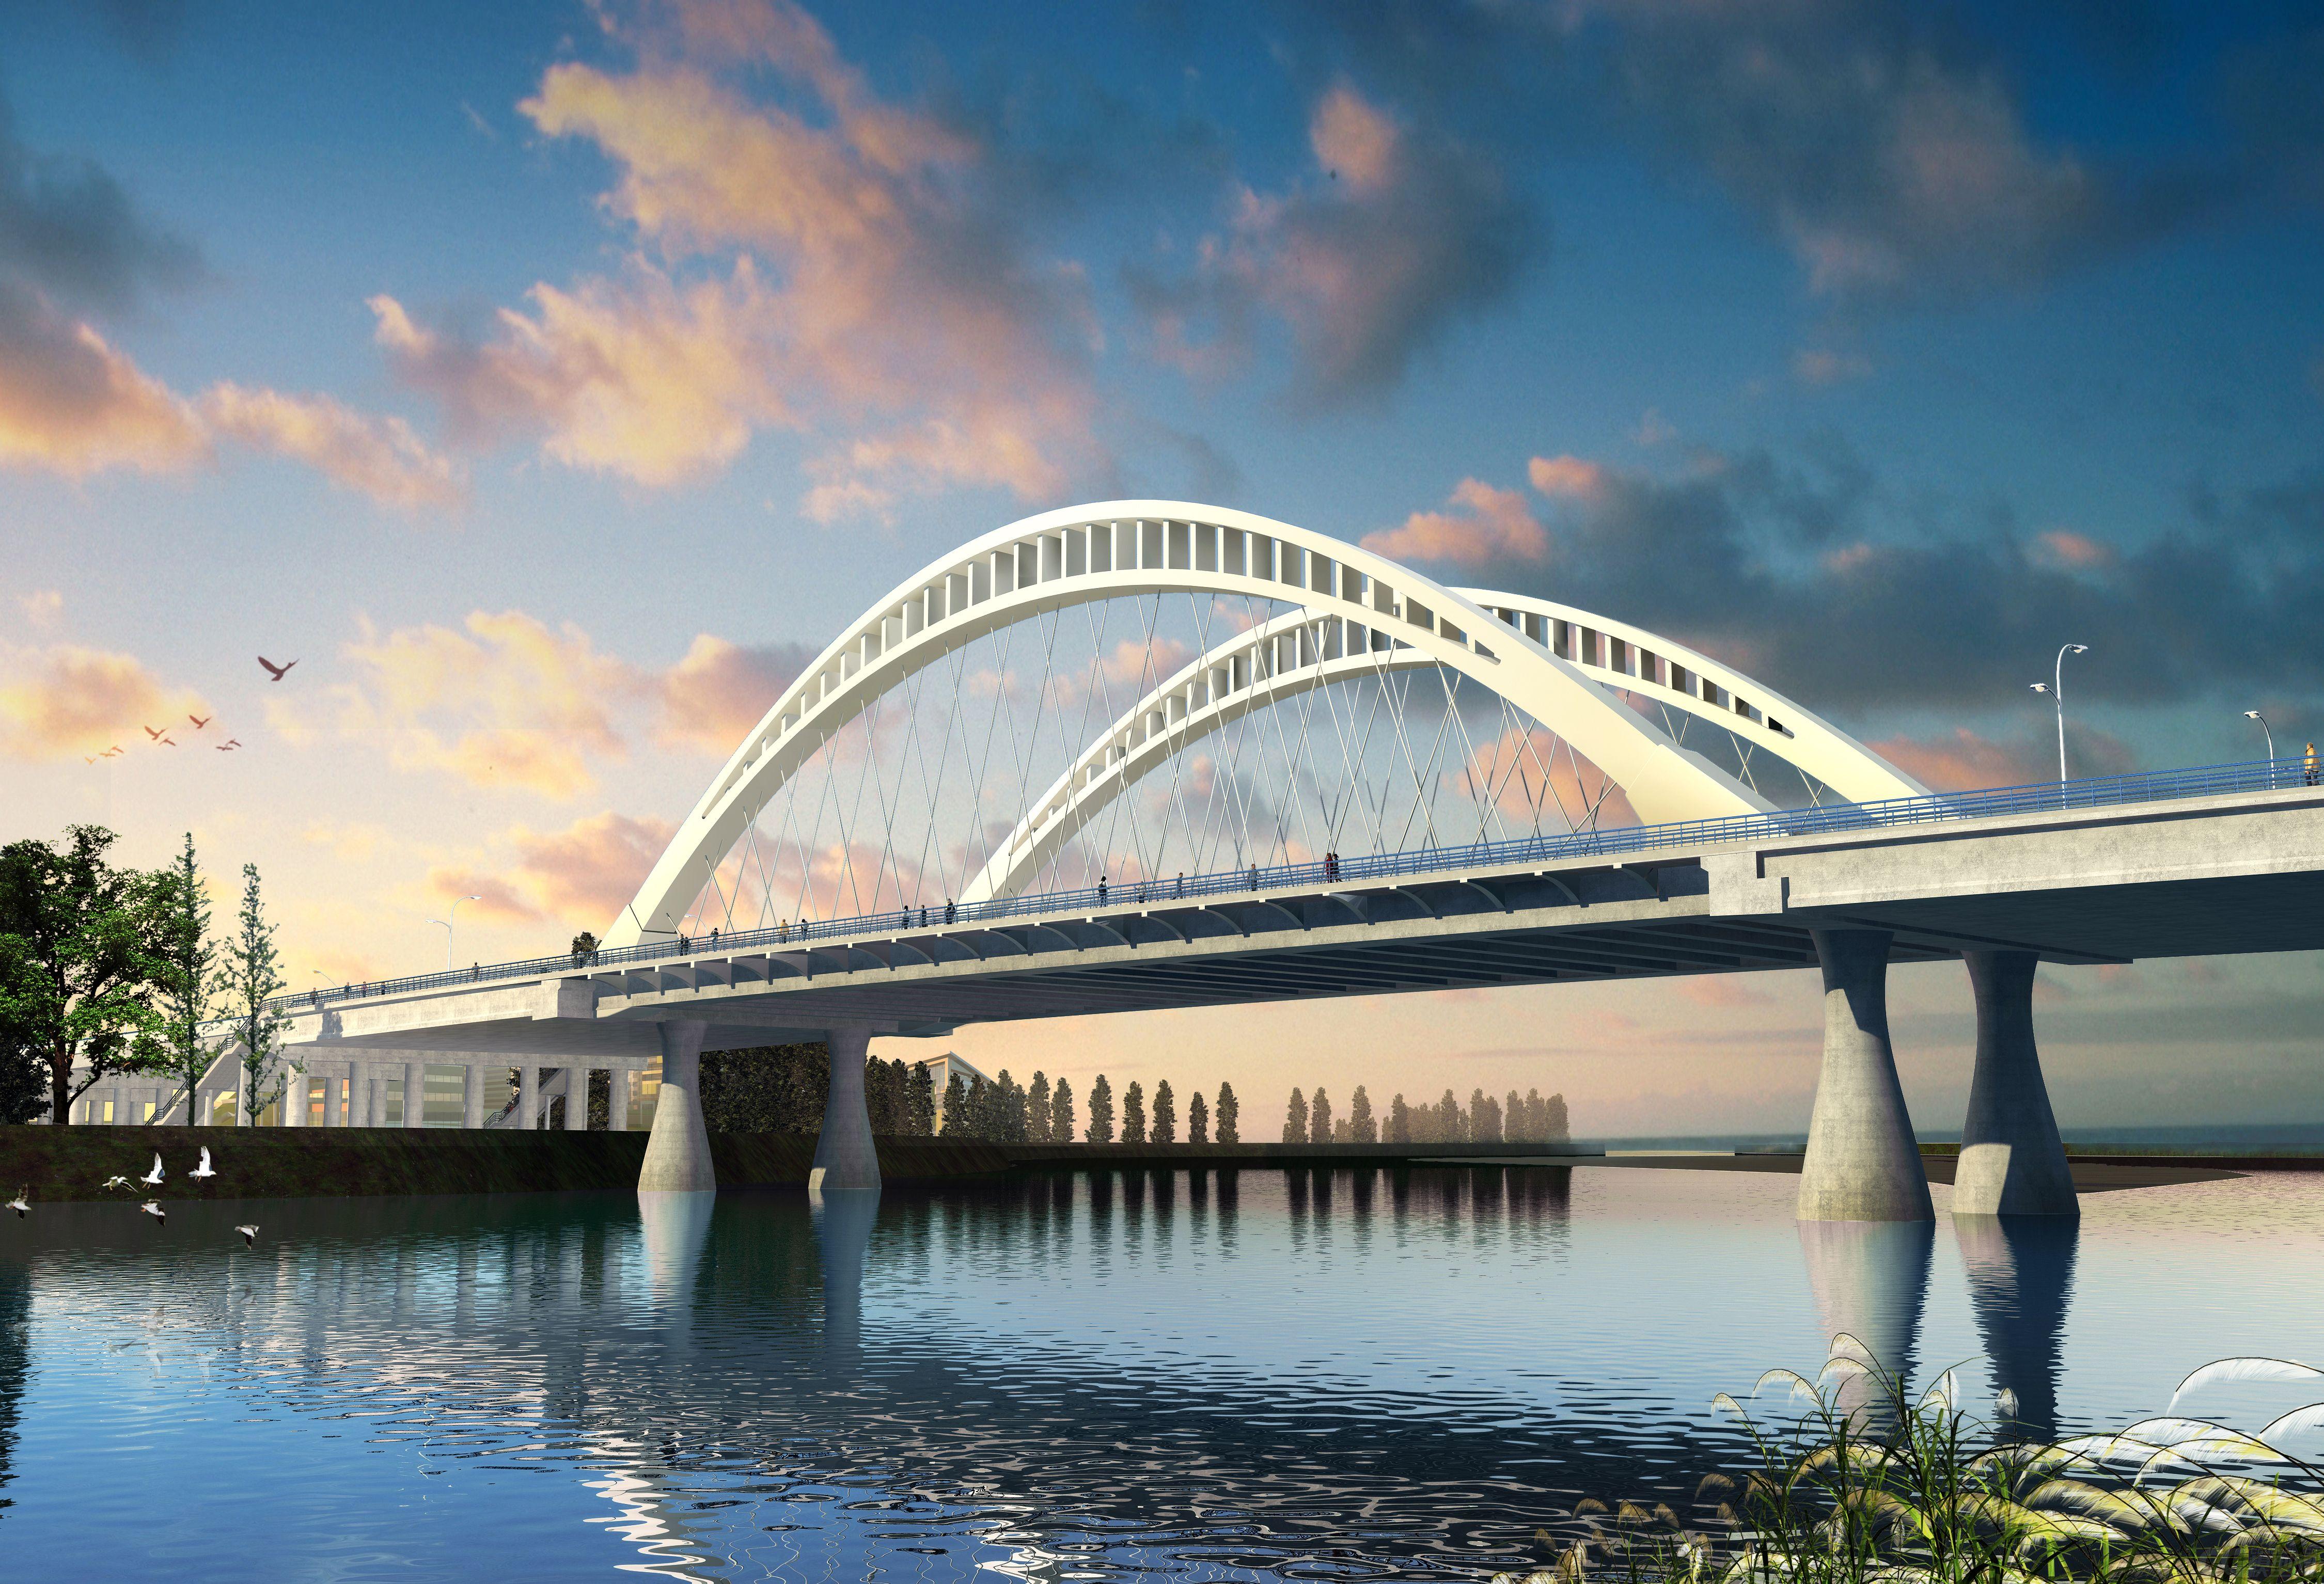 贵州水柏铁路北盘江大桥(第一座铁路钢管砼拱桥)图文欣赏 - 土木在线